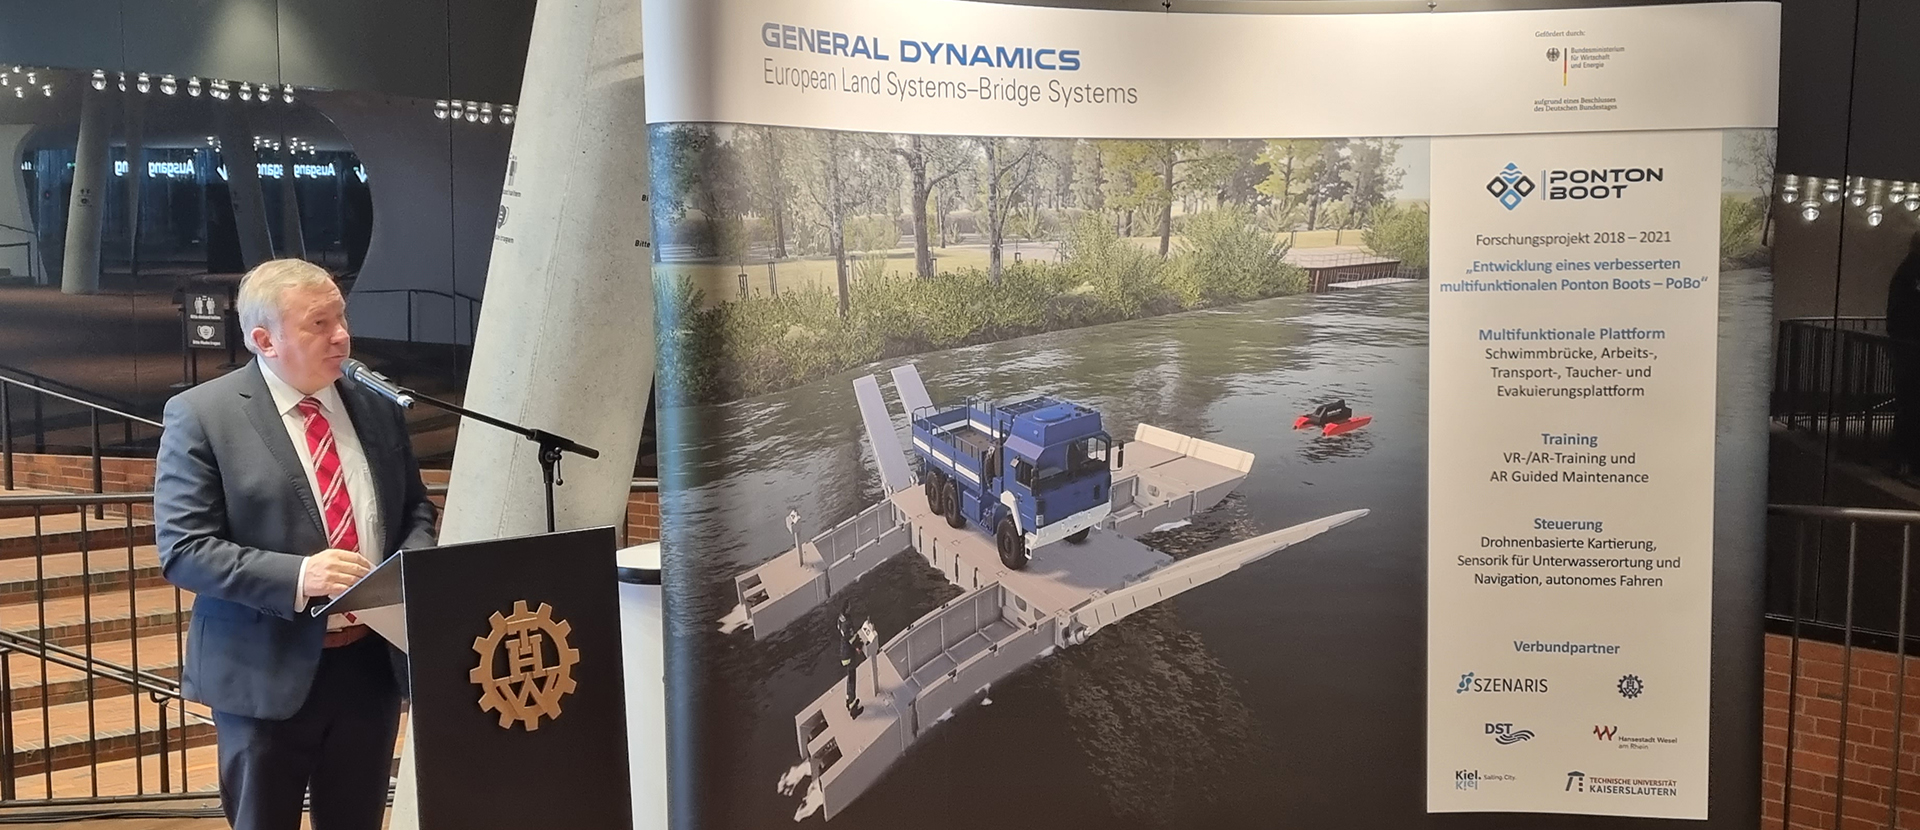  Neues Ponton-Boot-System für den Katastropheneinsatz vor dem Einsatz – gefördert durch das Bundeswirtschaftsministerium 